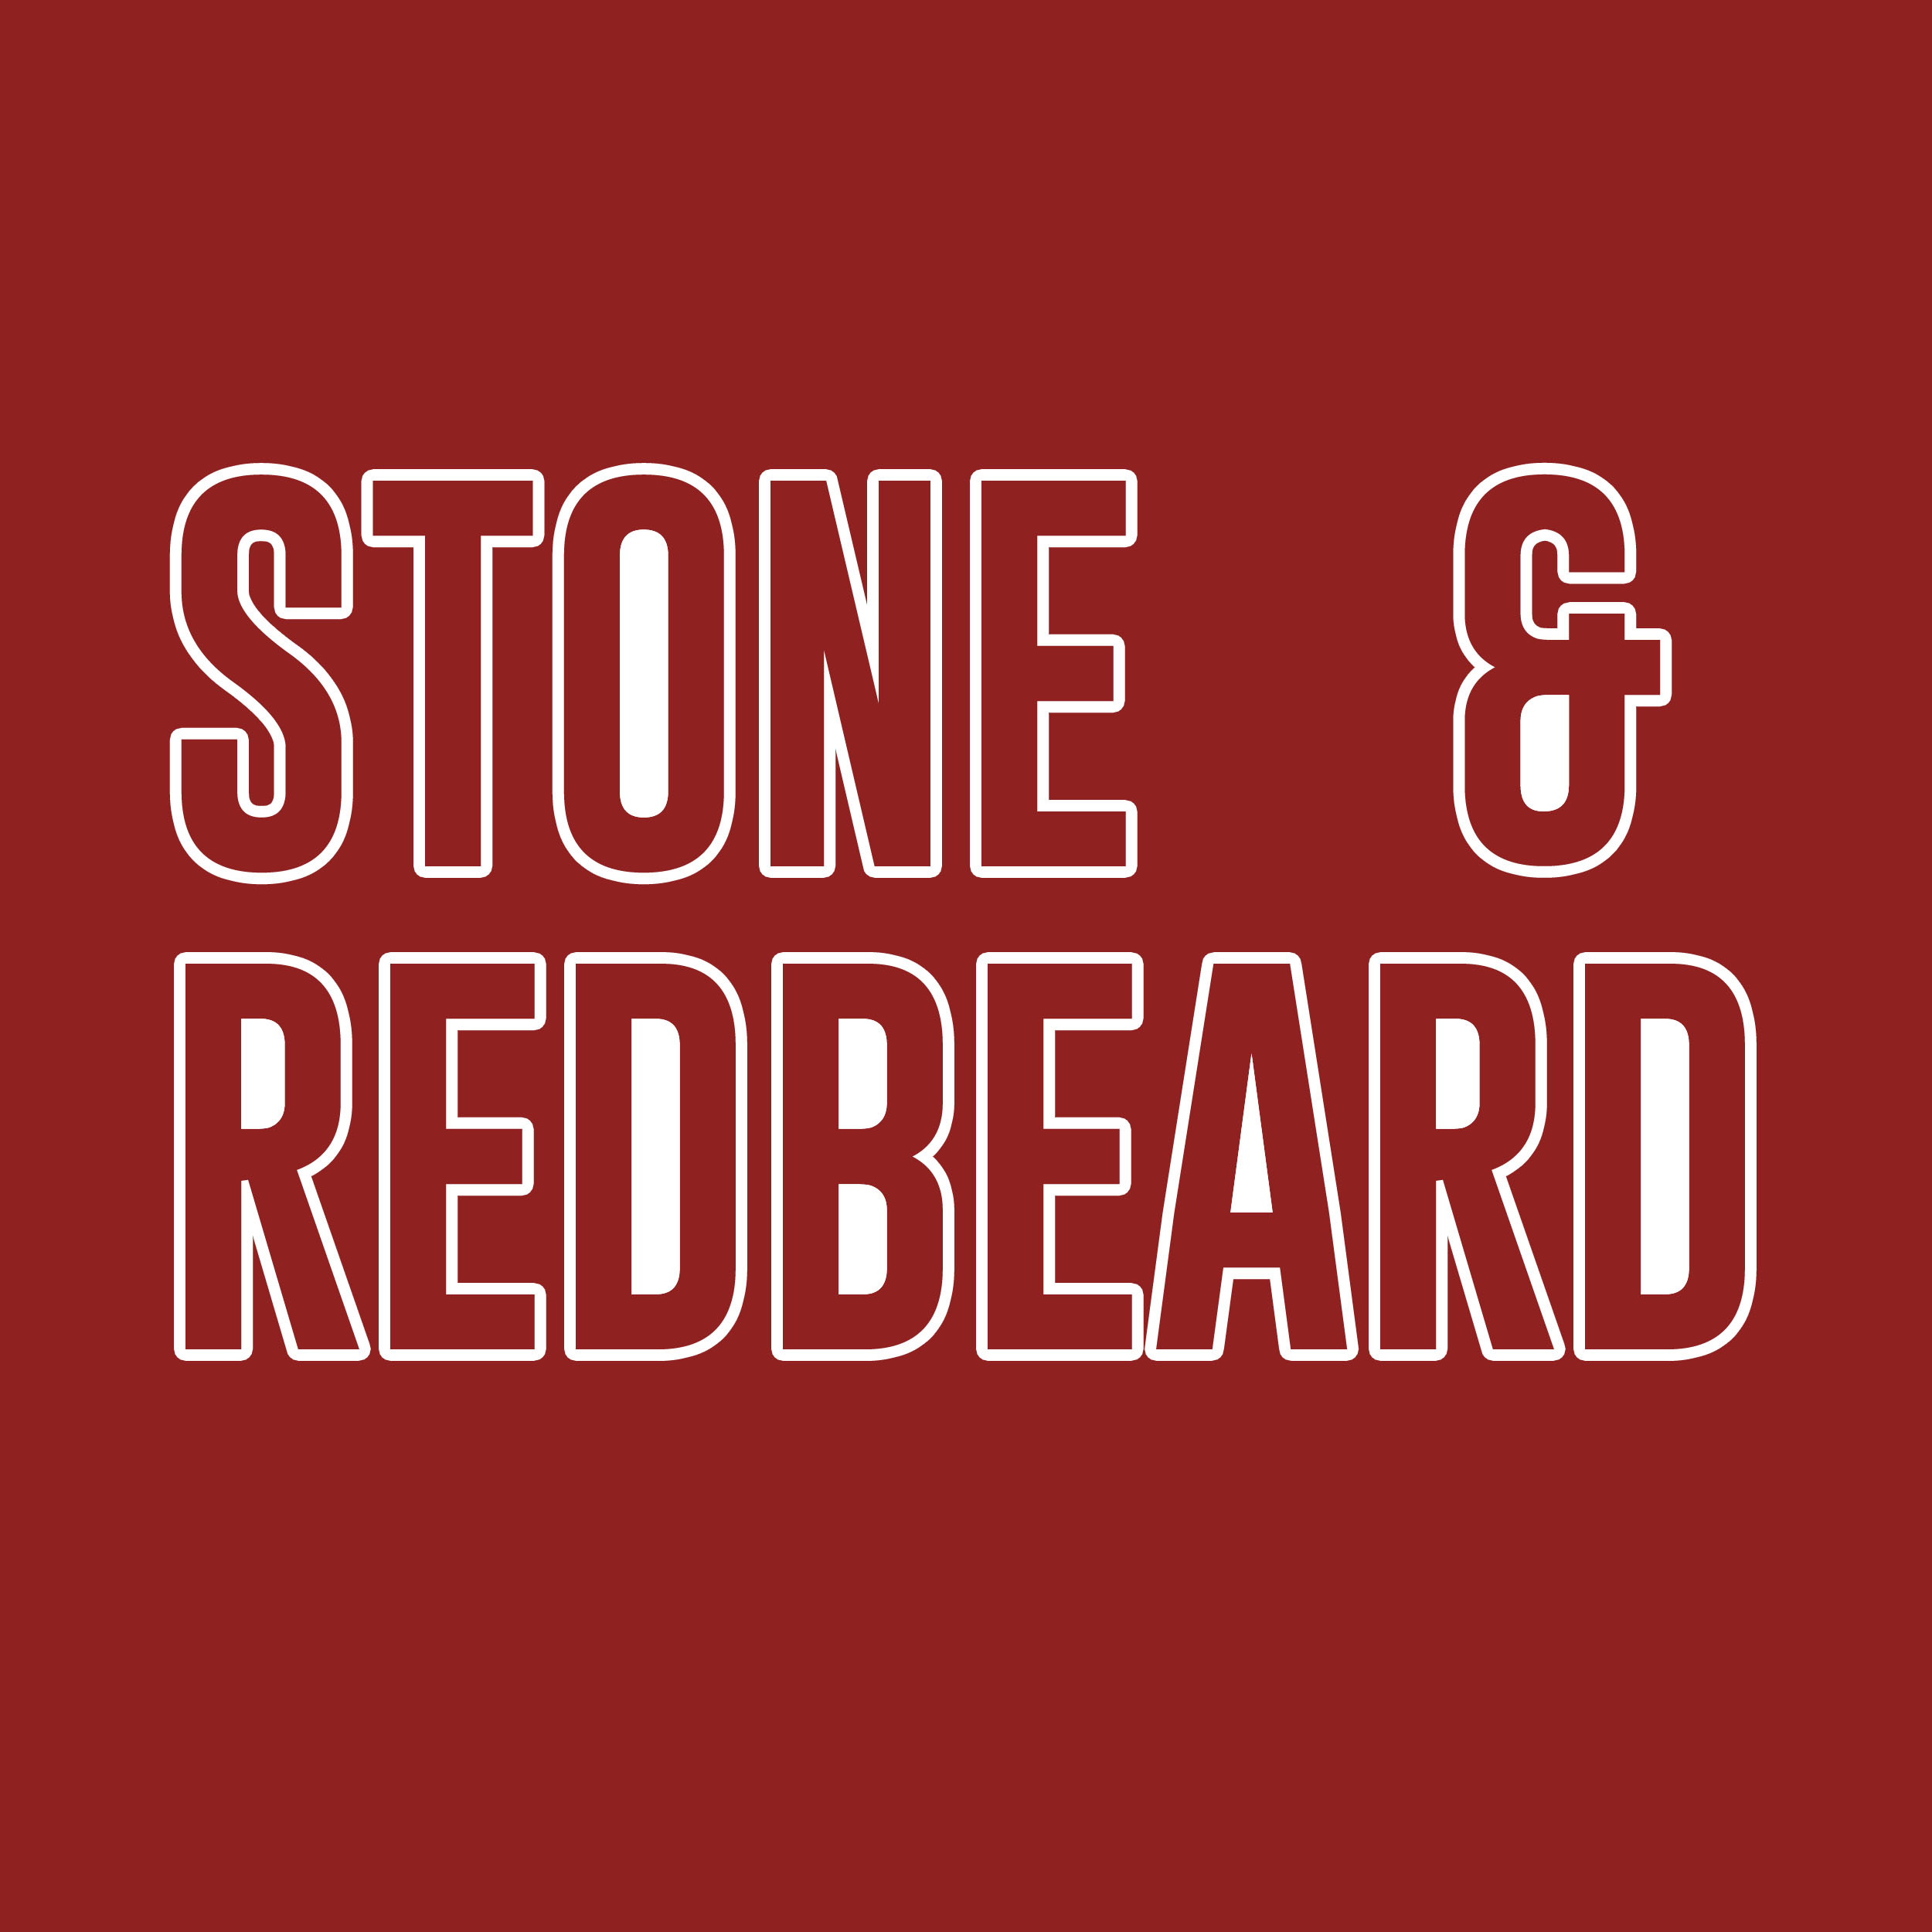 Stone & RedBeard